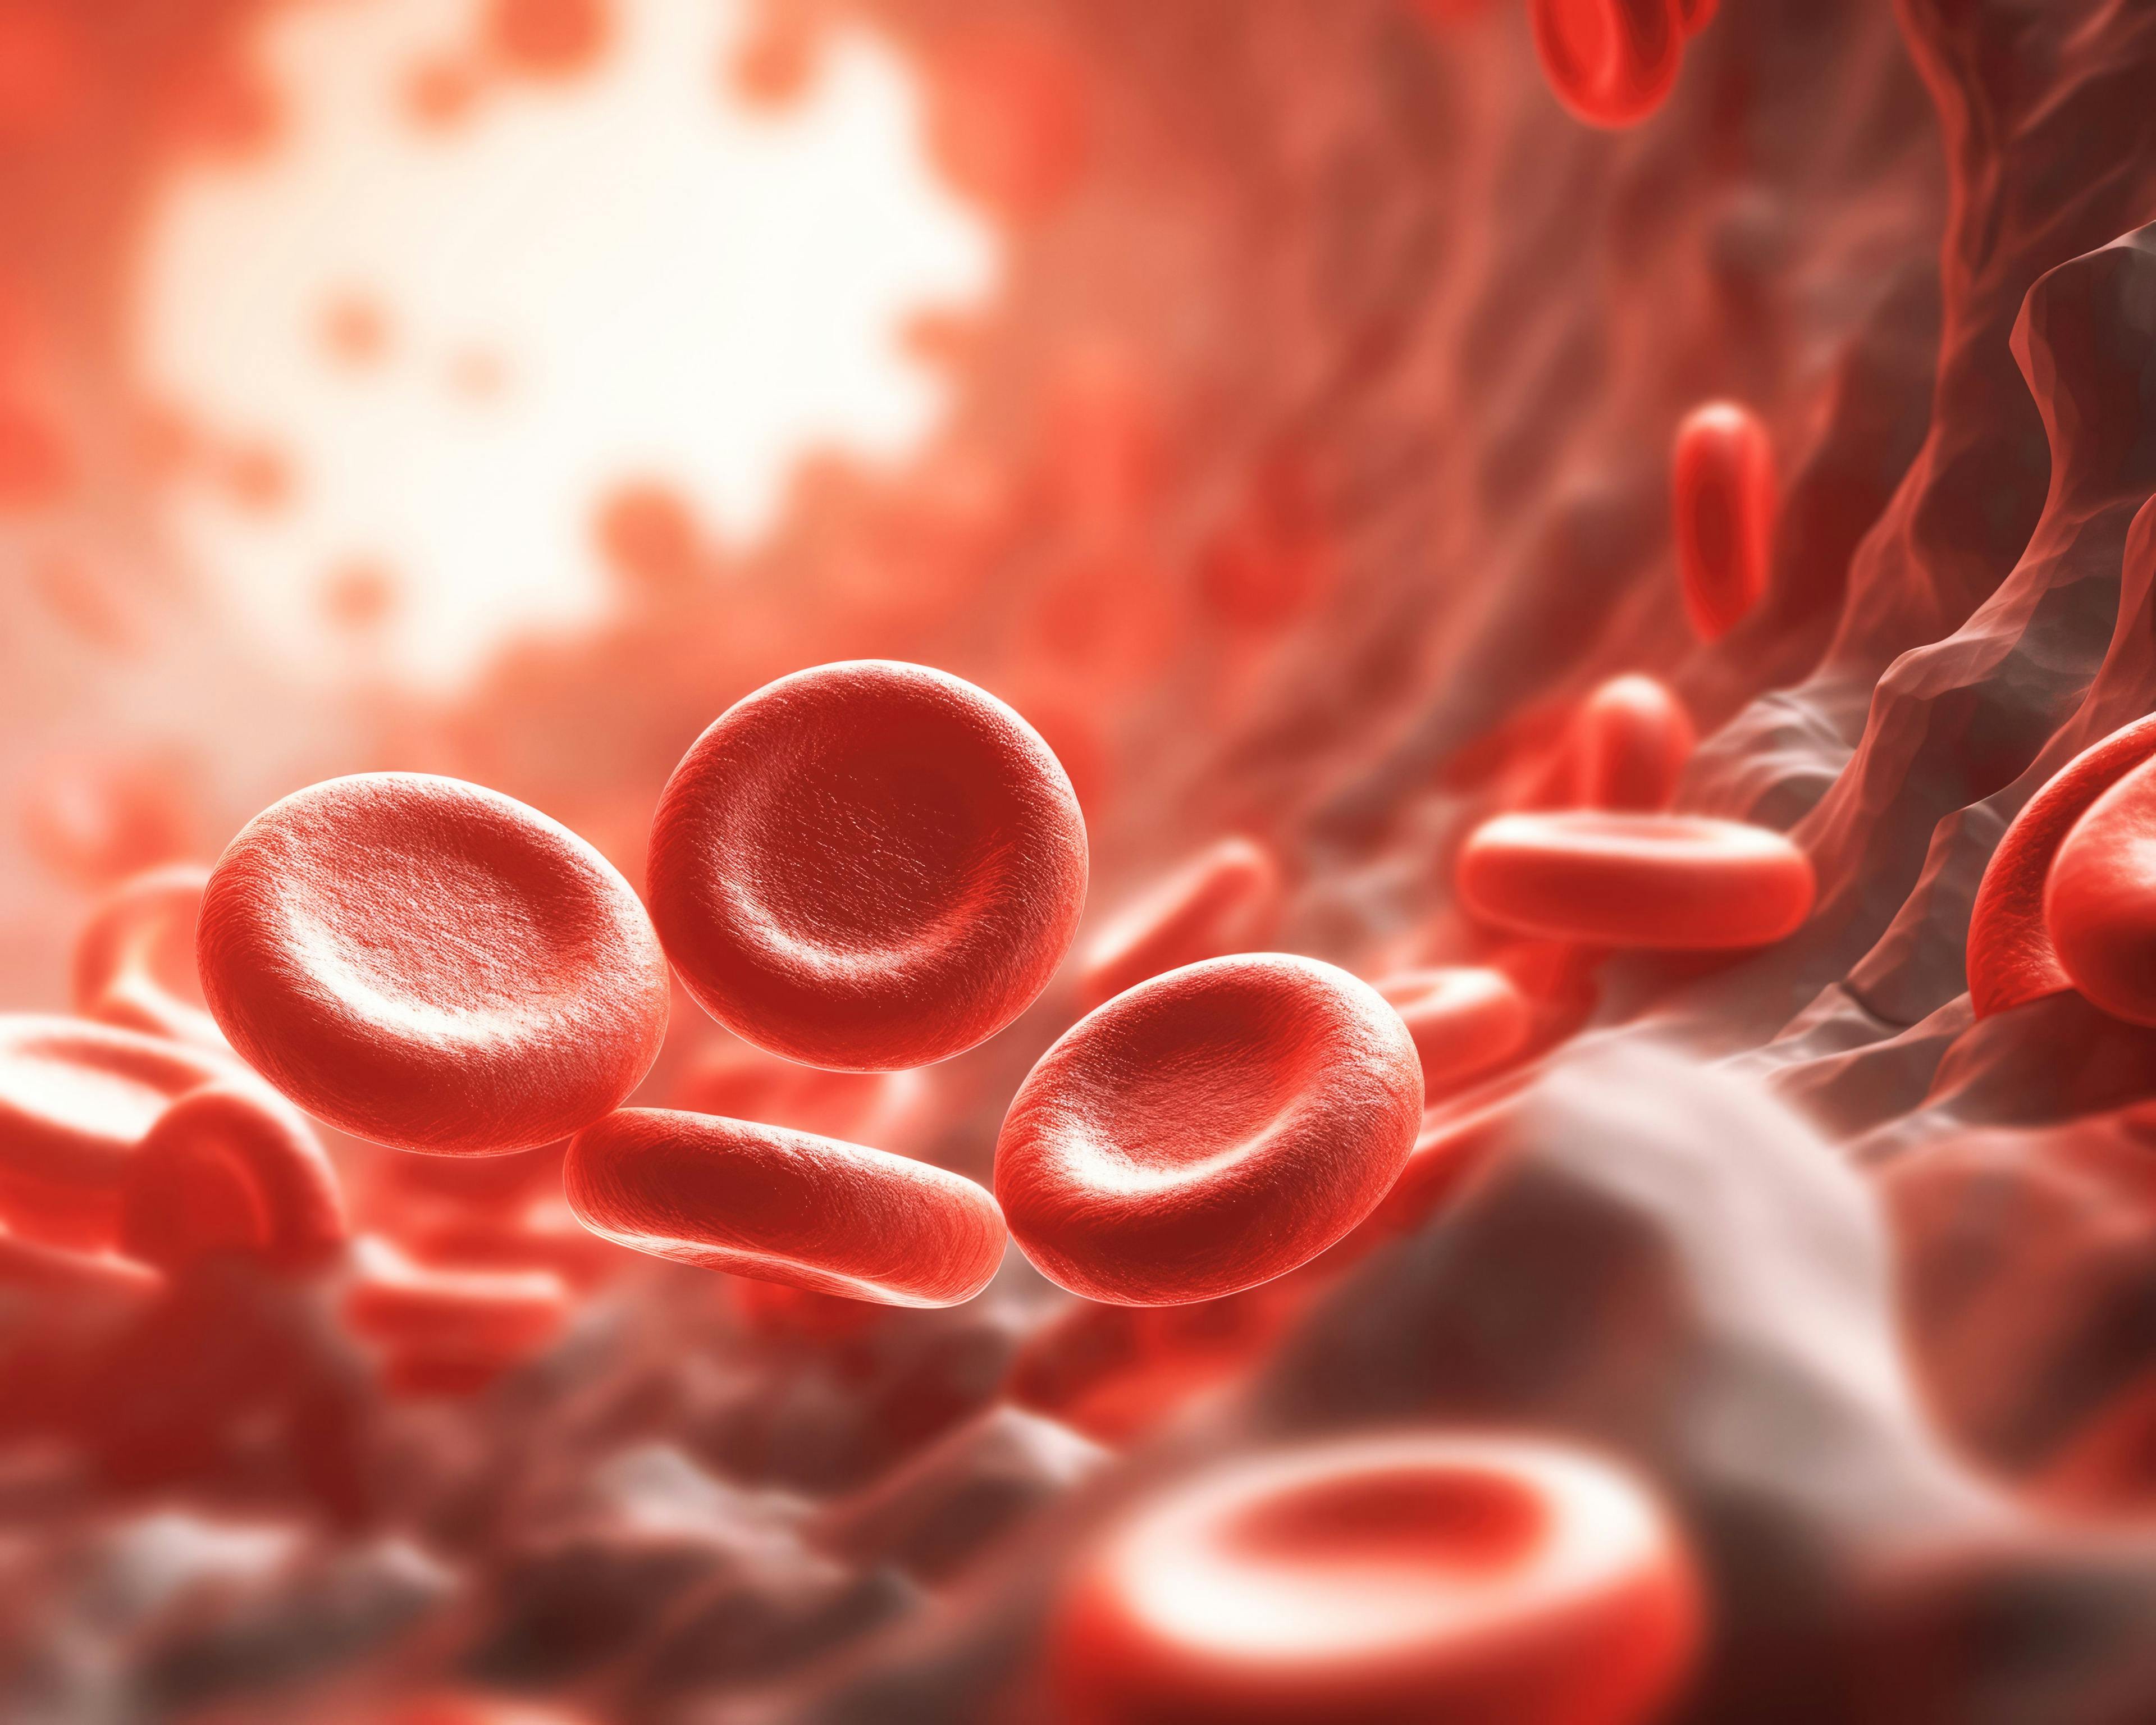 Red blood cells -- Image credit: ktsdesign | stock.adobe.com